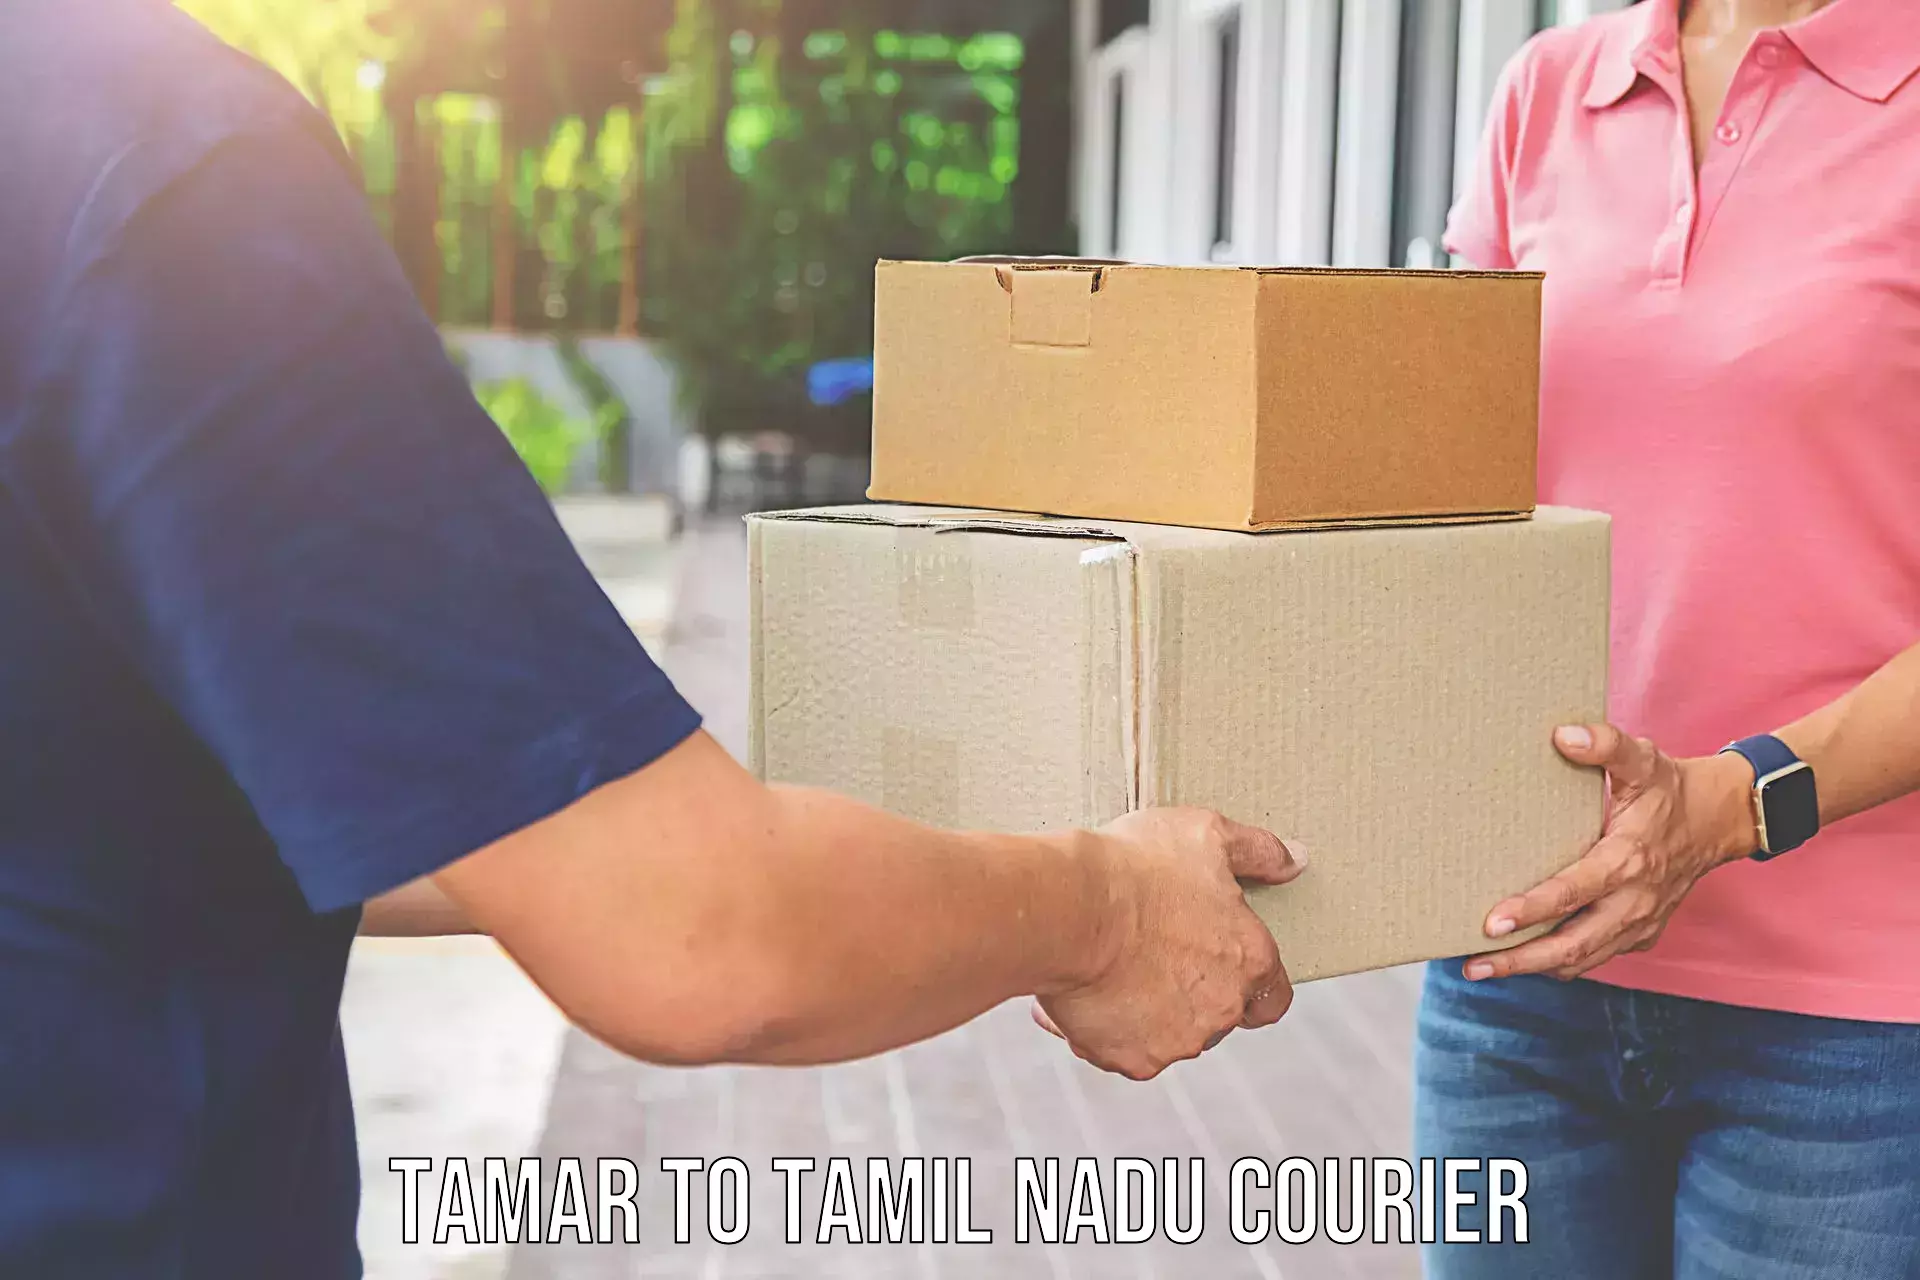 Furniture transport specialists Tamar to Tamil Nadu